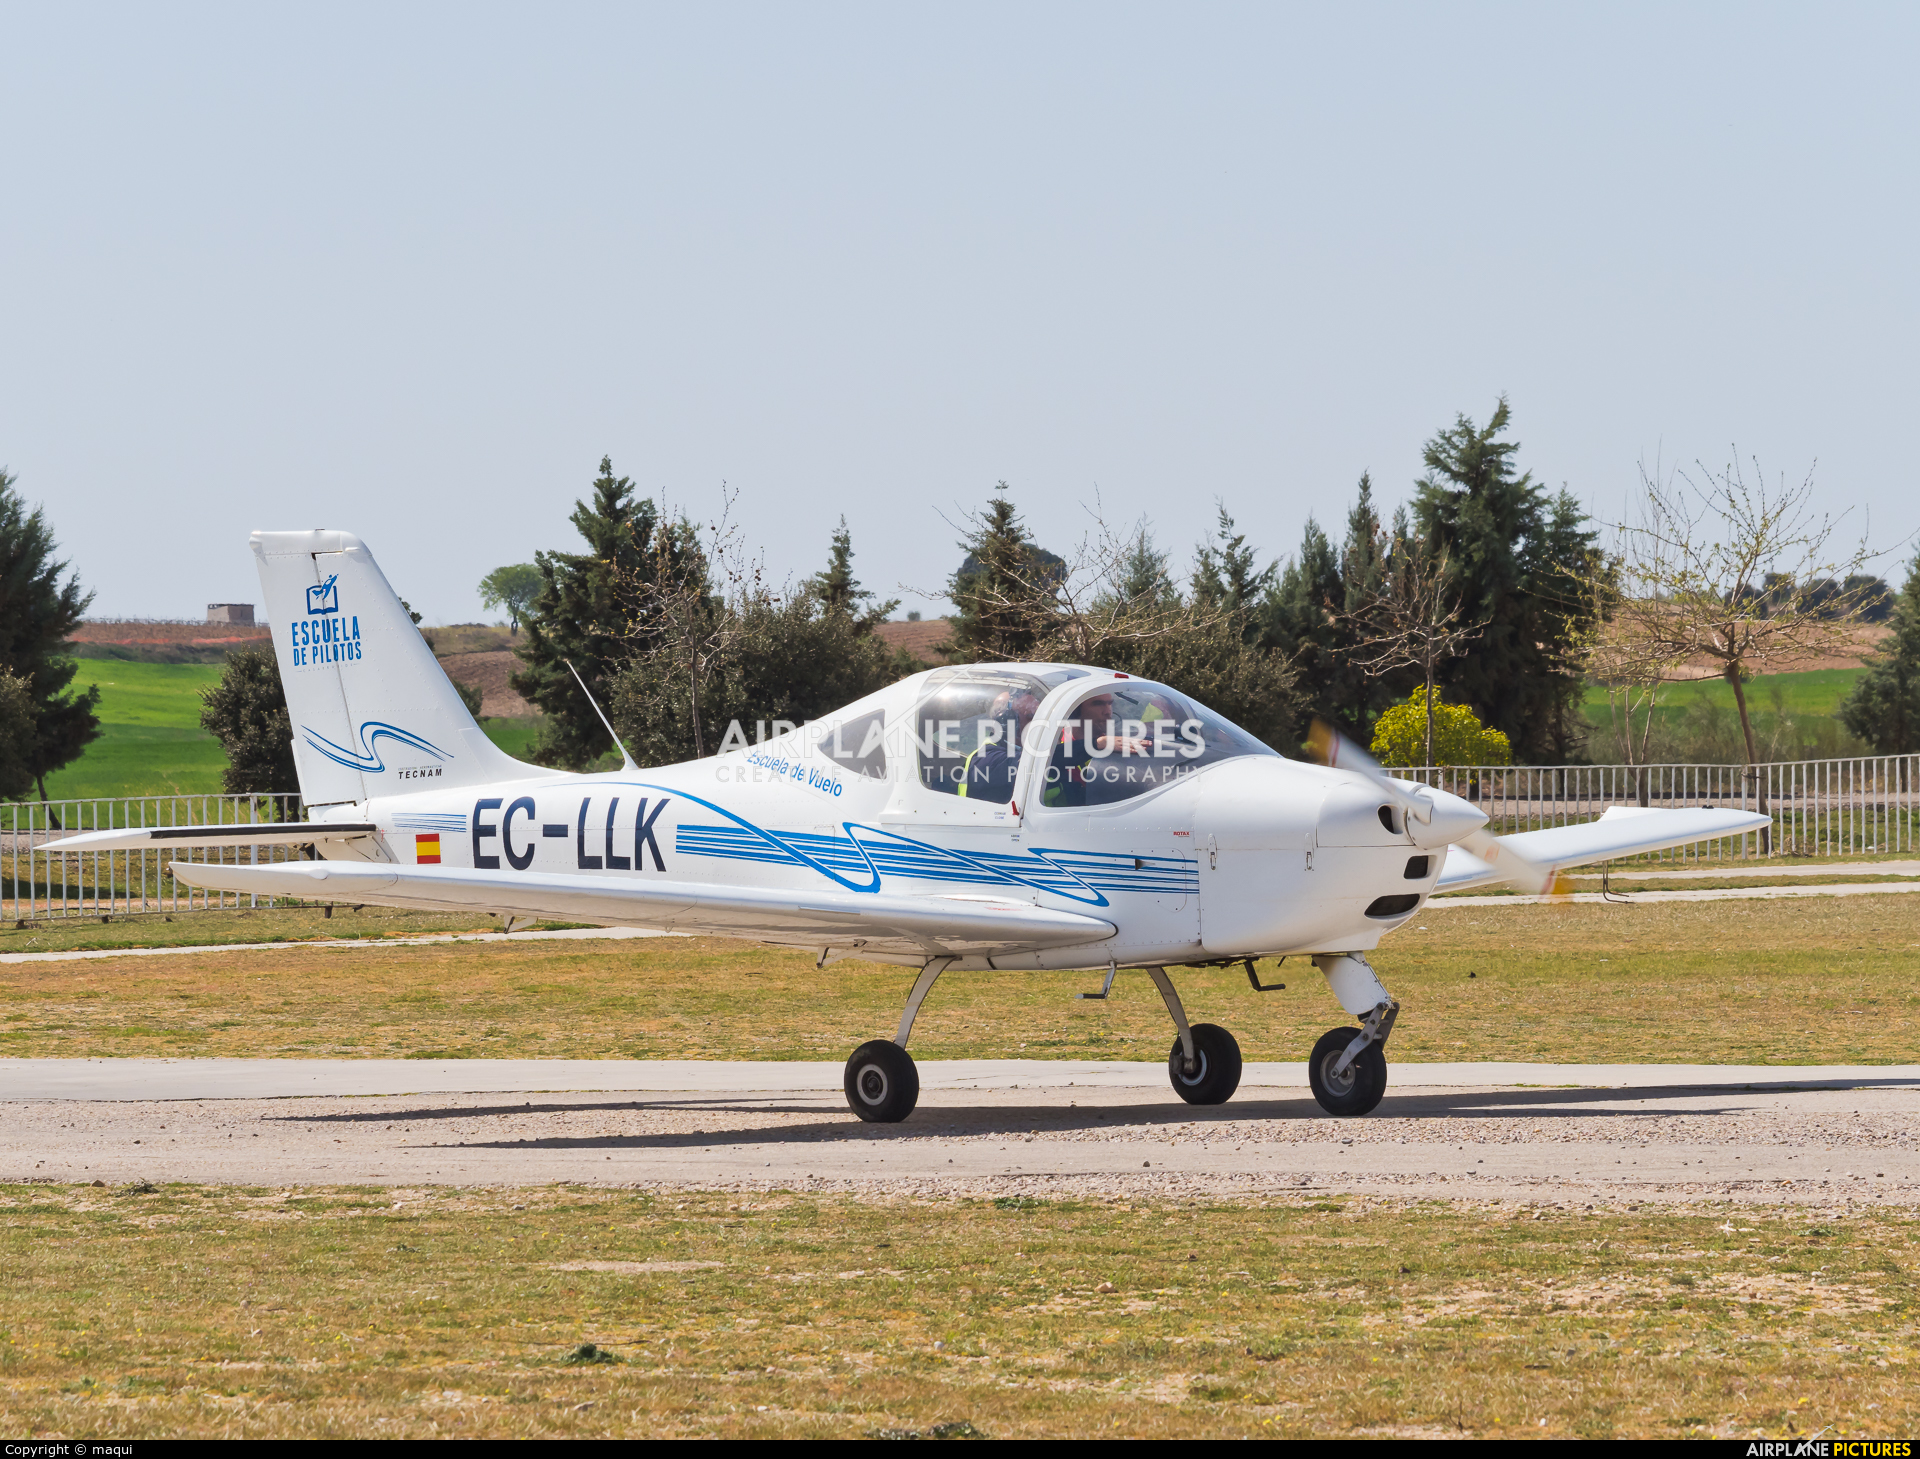 Escuela de Pilotos Casarrubios EC-LLK aircraft at Casarrubios del Monte